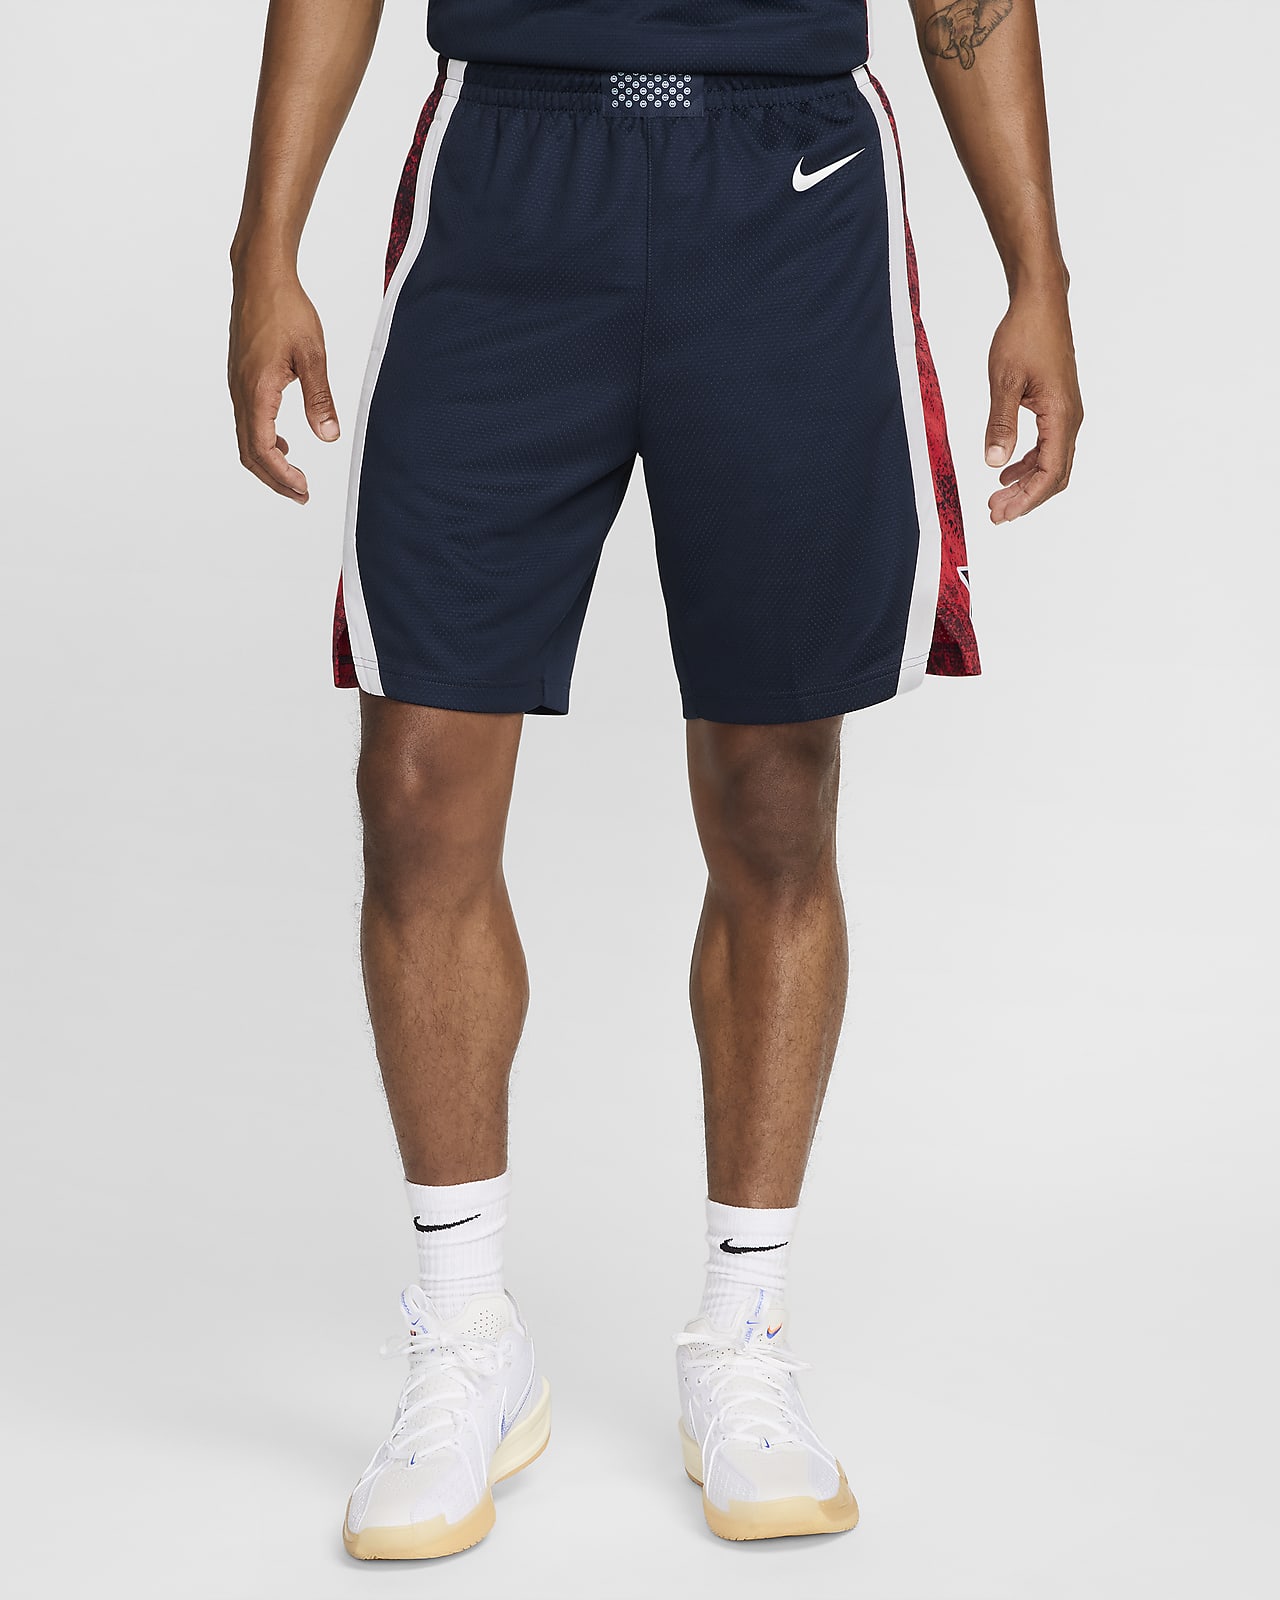 EUA Limited Road Pantalons curts de bàsquet Jordan - Home